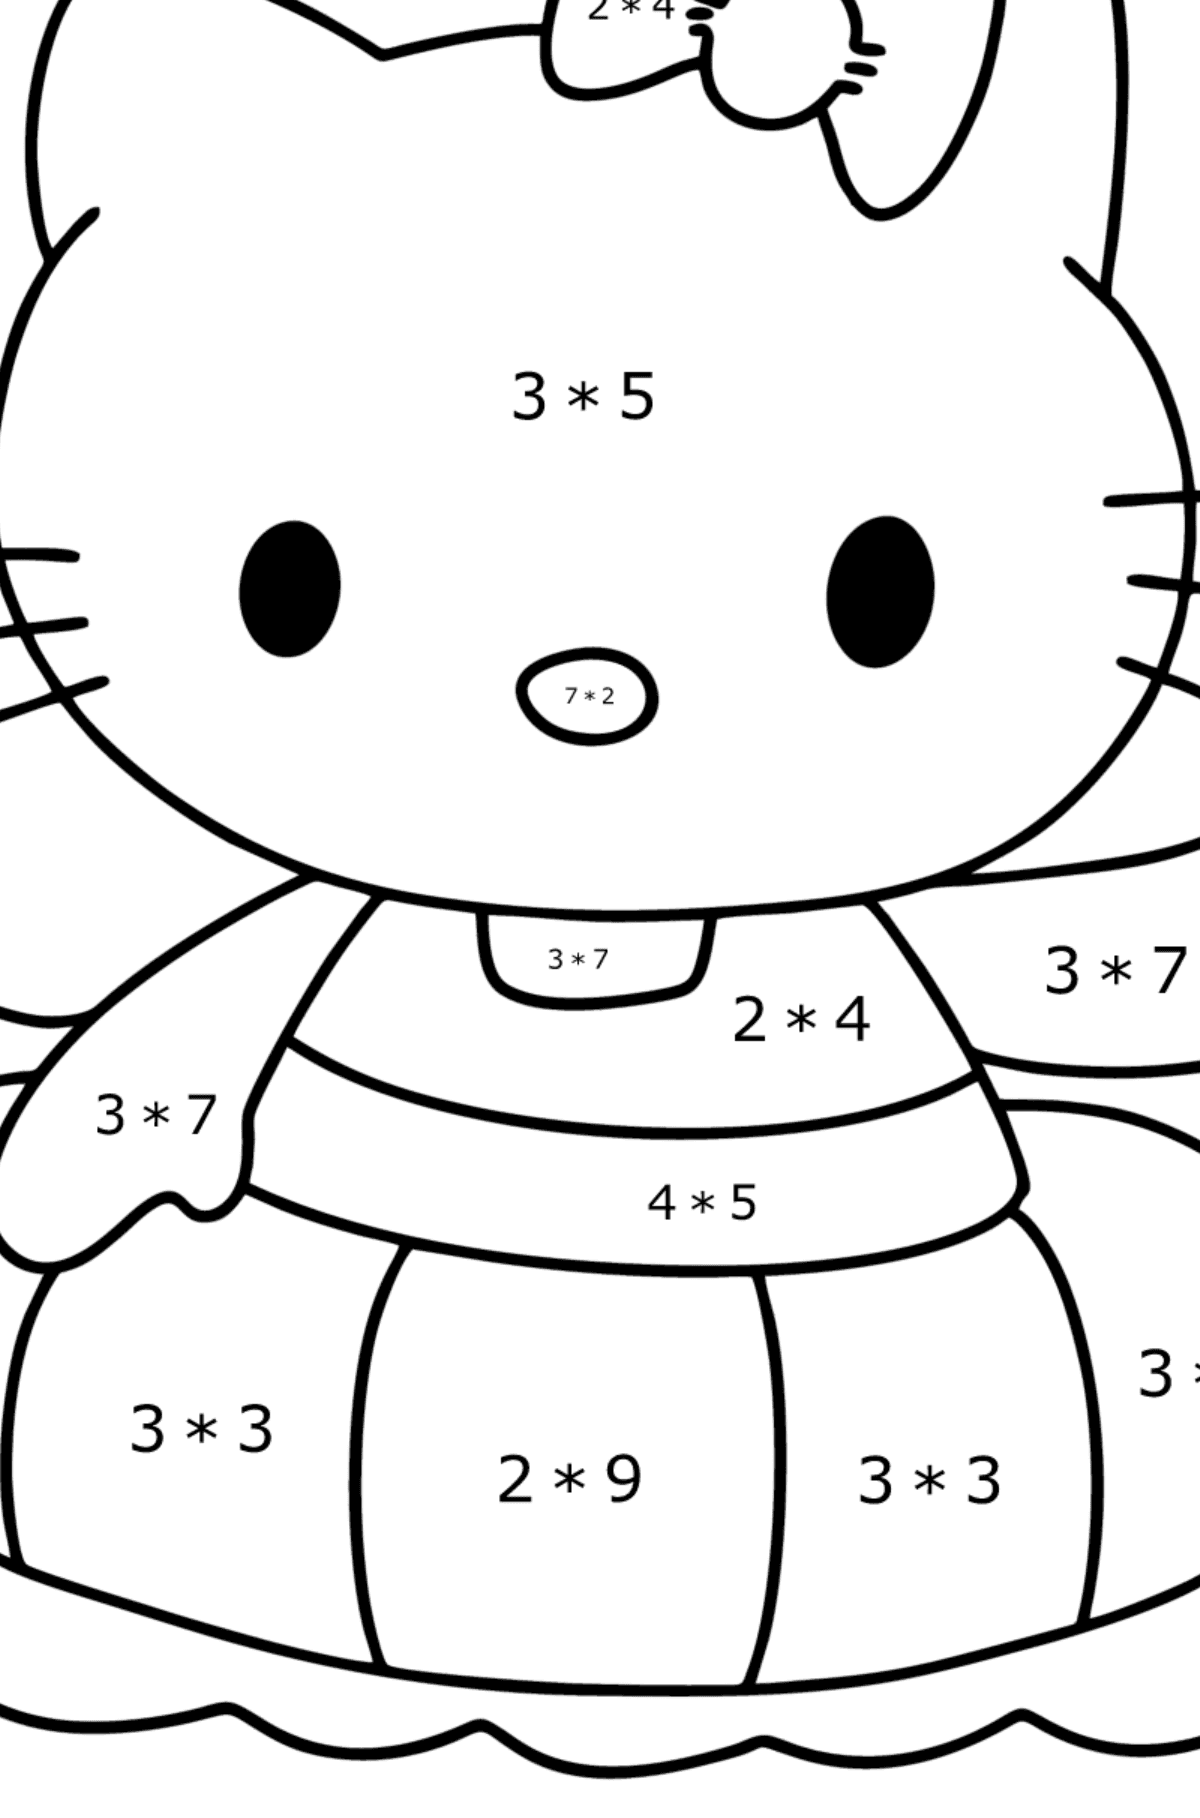 Boyama sayfası Hello Kitty yüzer - Matematik Boyama - Çarpma çocuklar için